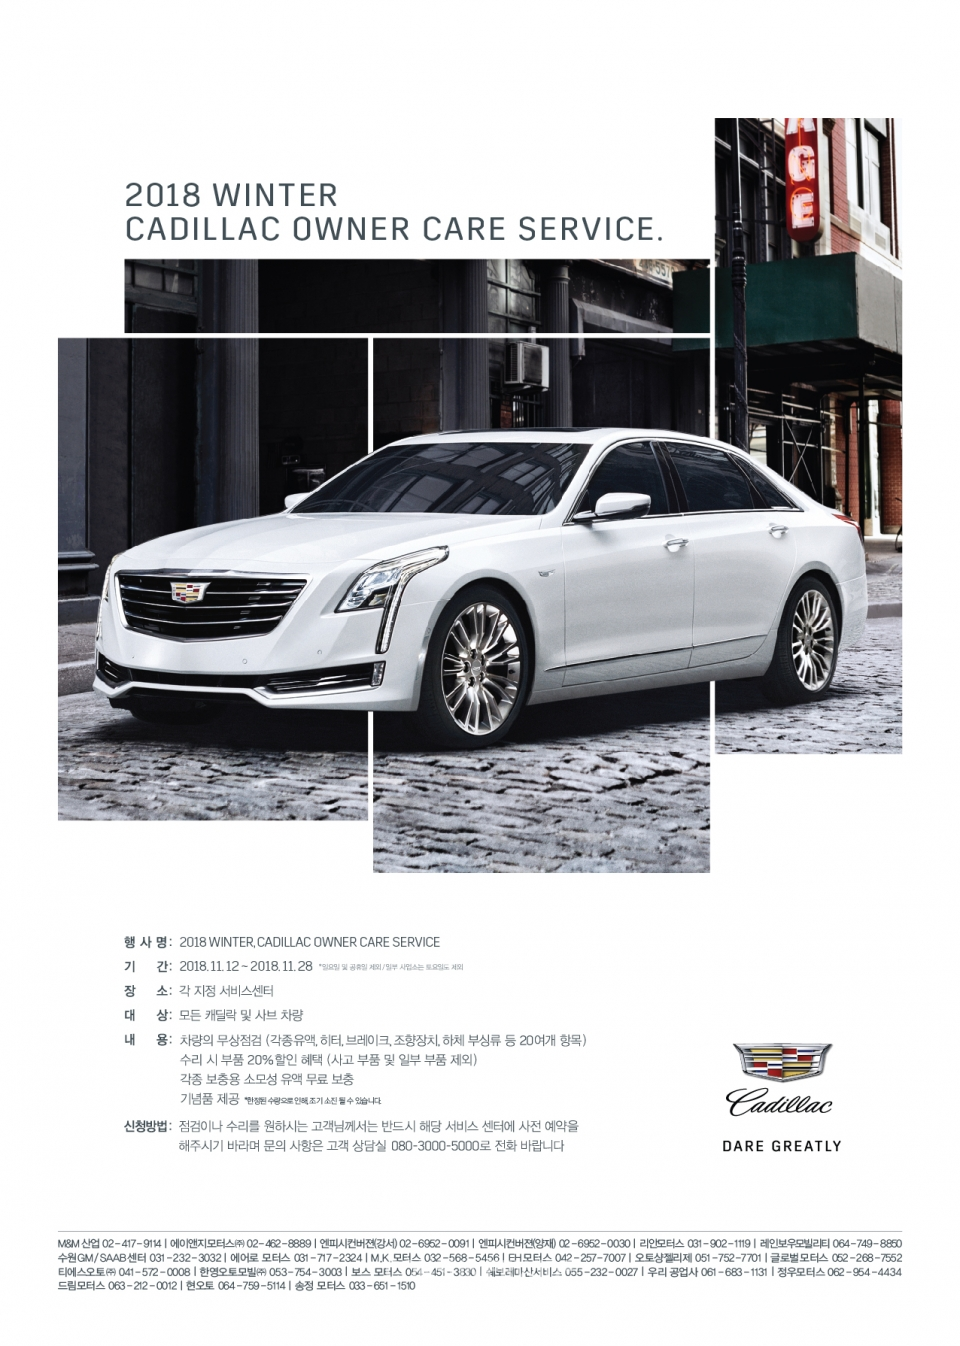 캐딜락(Cadillac)이 이달 12일부터 28일까지 고객들의 겨울철 안전한 운행을 위해 마련한 무상 점검 이벤트 ‘2018 윈터, 캐딜락 오너 케어 서비스(2018 Winter, Cadillac Owner Care Service)’를 실시한다.(사진: 캐딜락 제공)